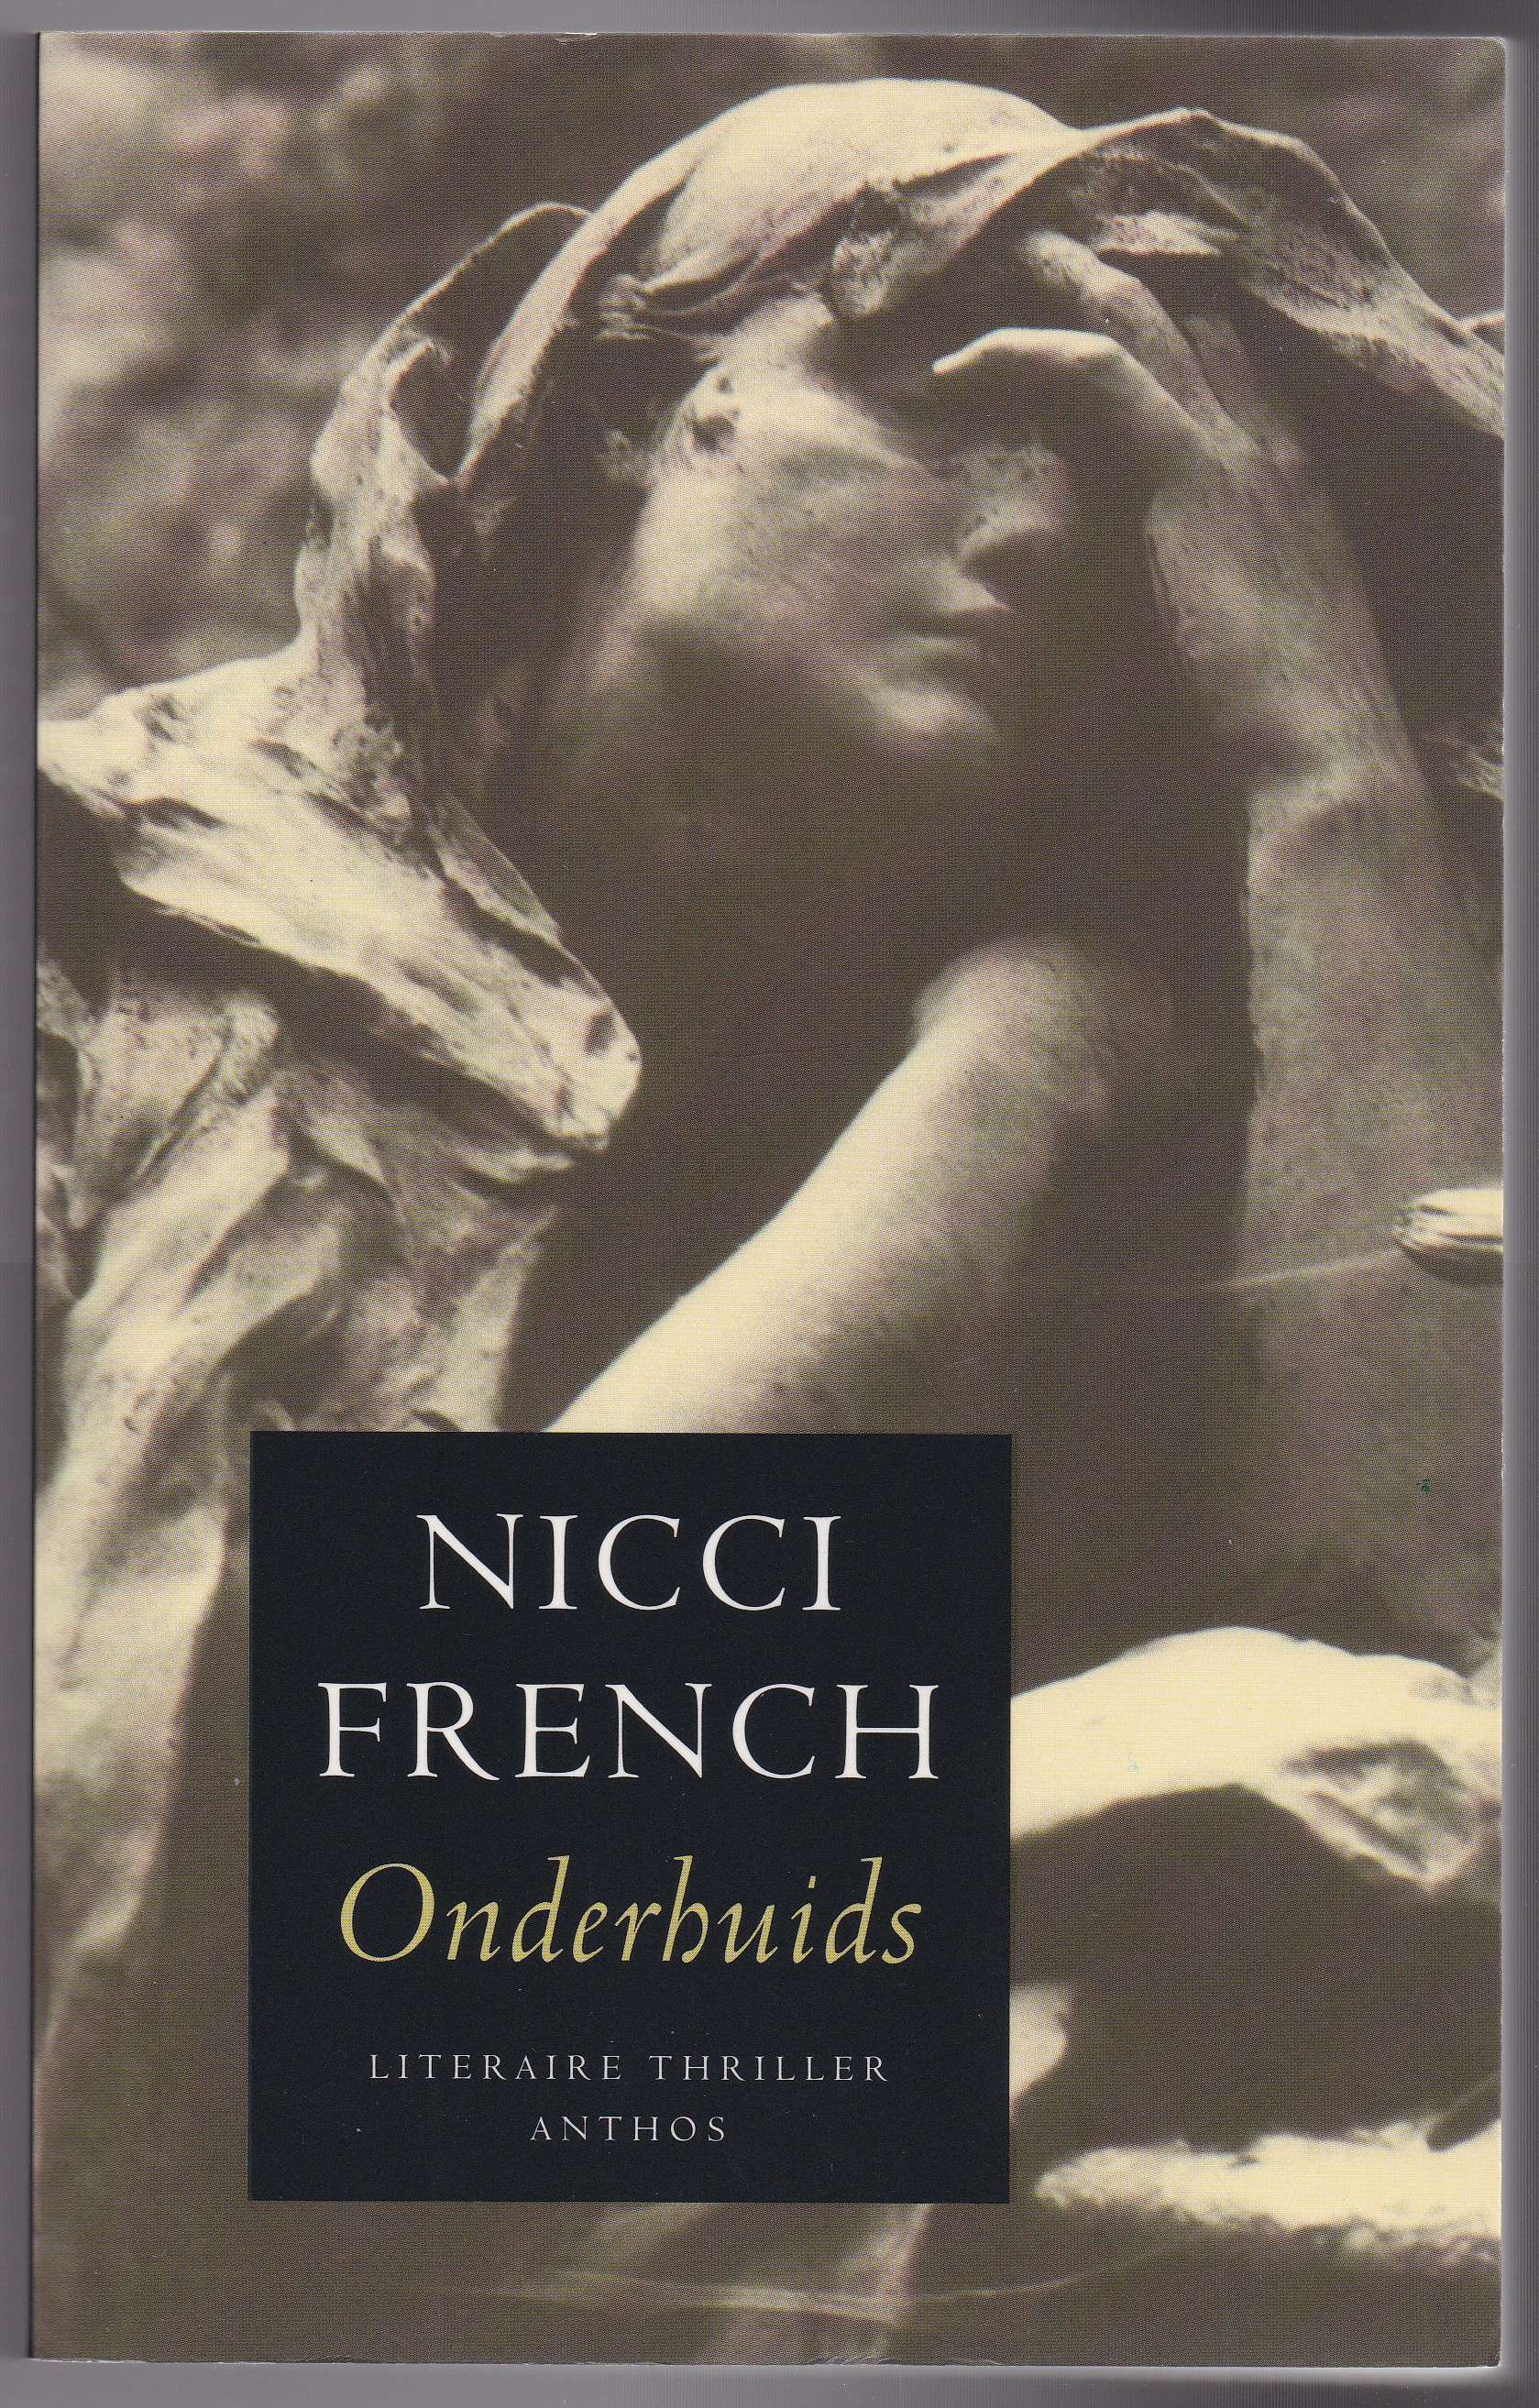 French, Nicci - Onderhuids. Literaire thriller. Vertaald door Molly van Gelder en Eelco Vijzelaar